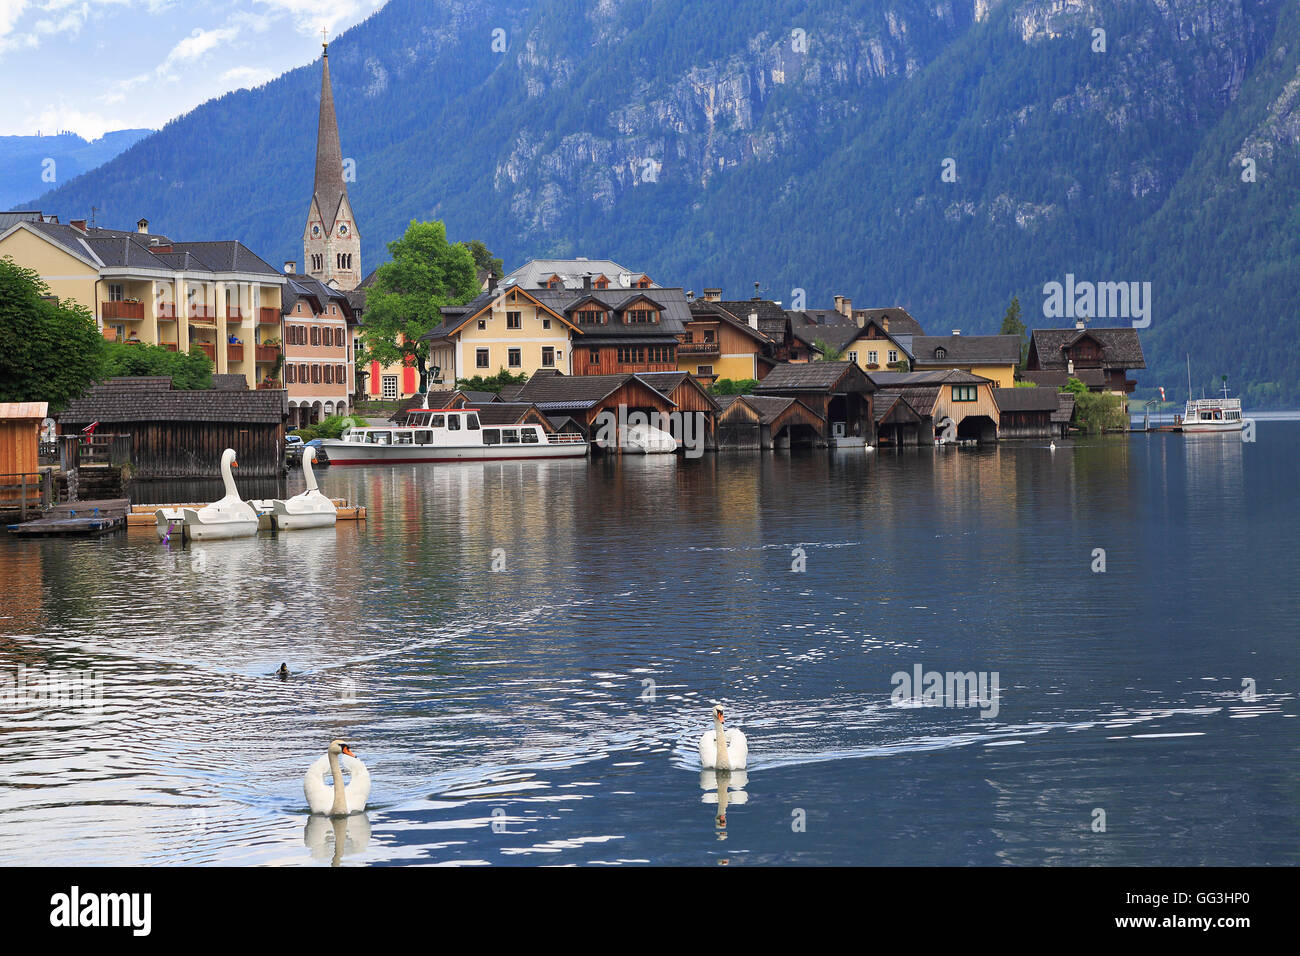 Village de Hallstatt et de réflexions dans le lac des cygnes, Autriche Banque D'Images